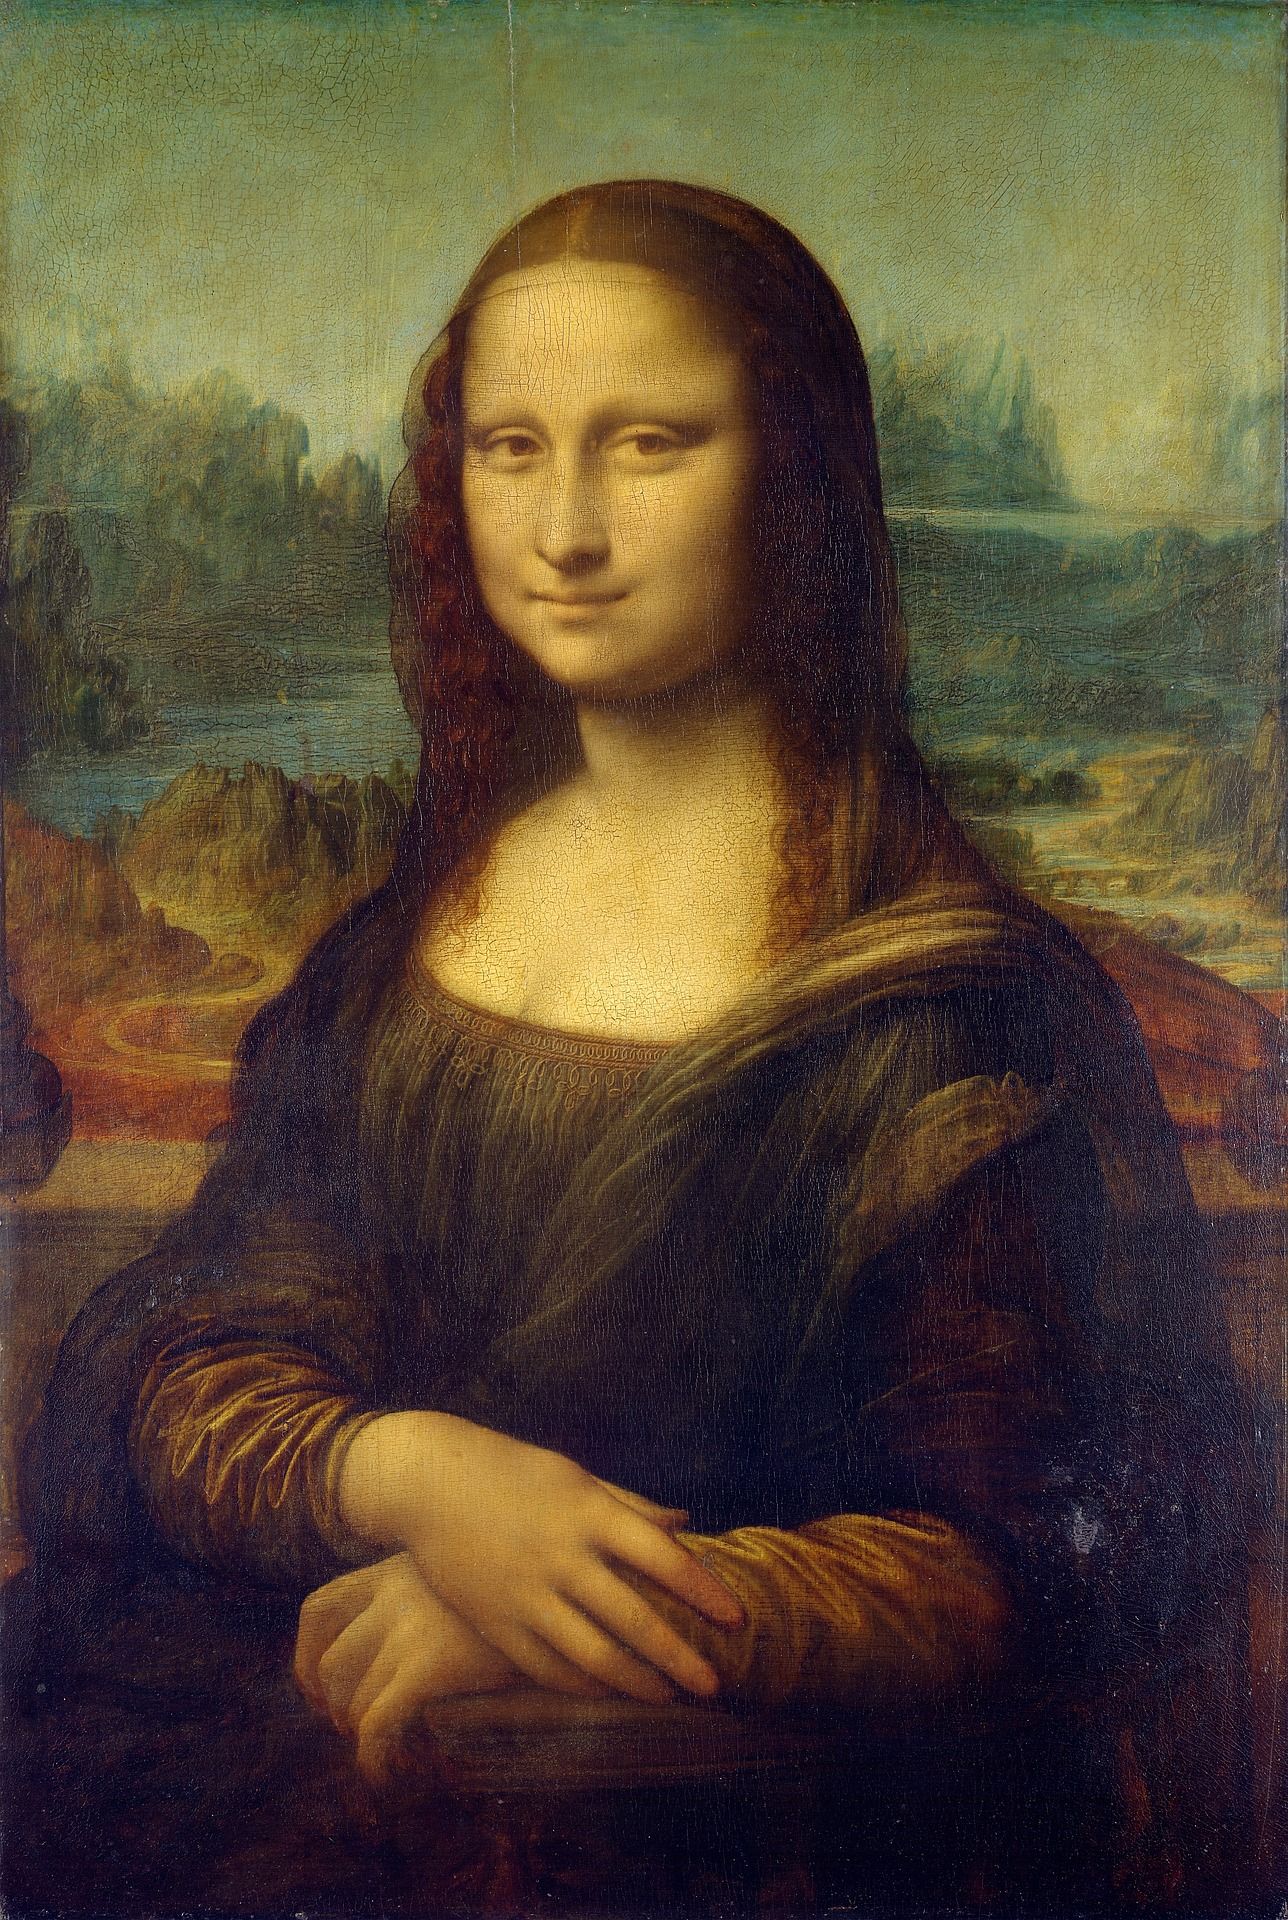 Mona Lisa painting portrait 